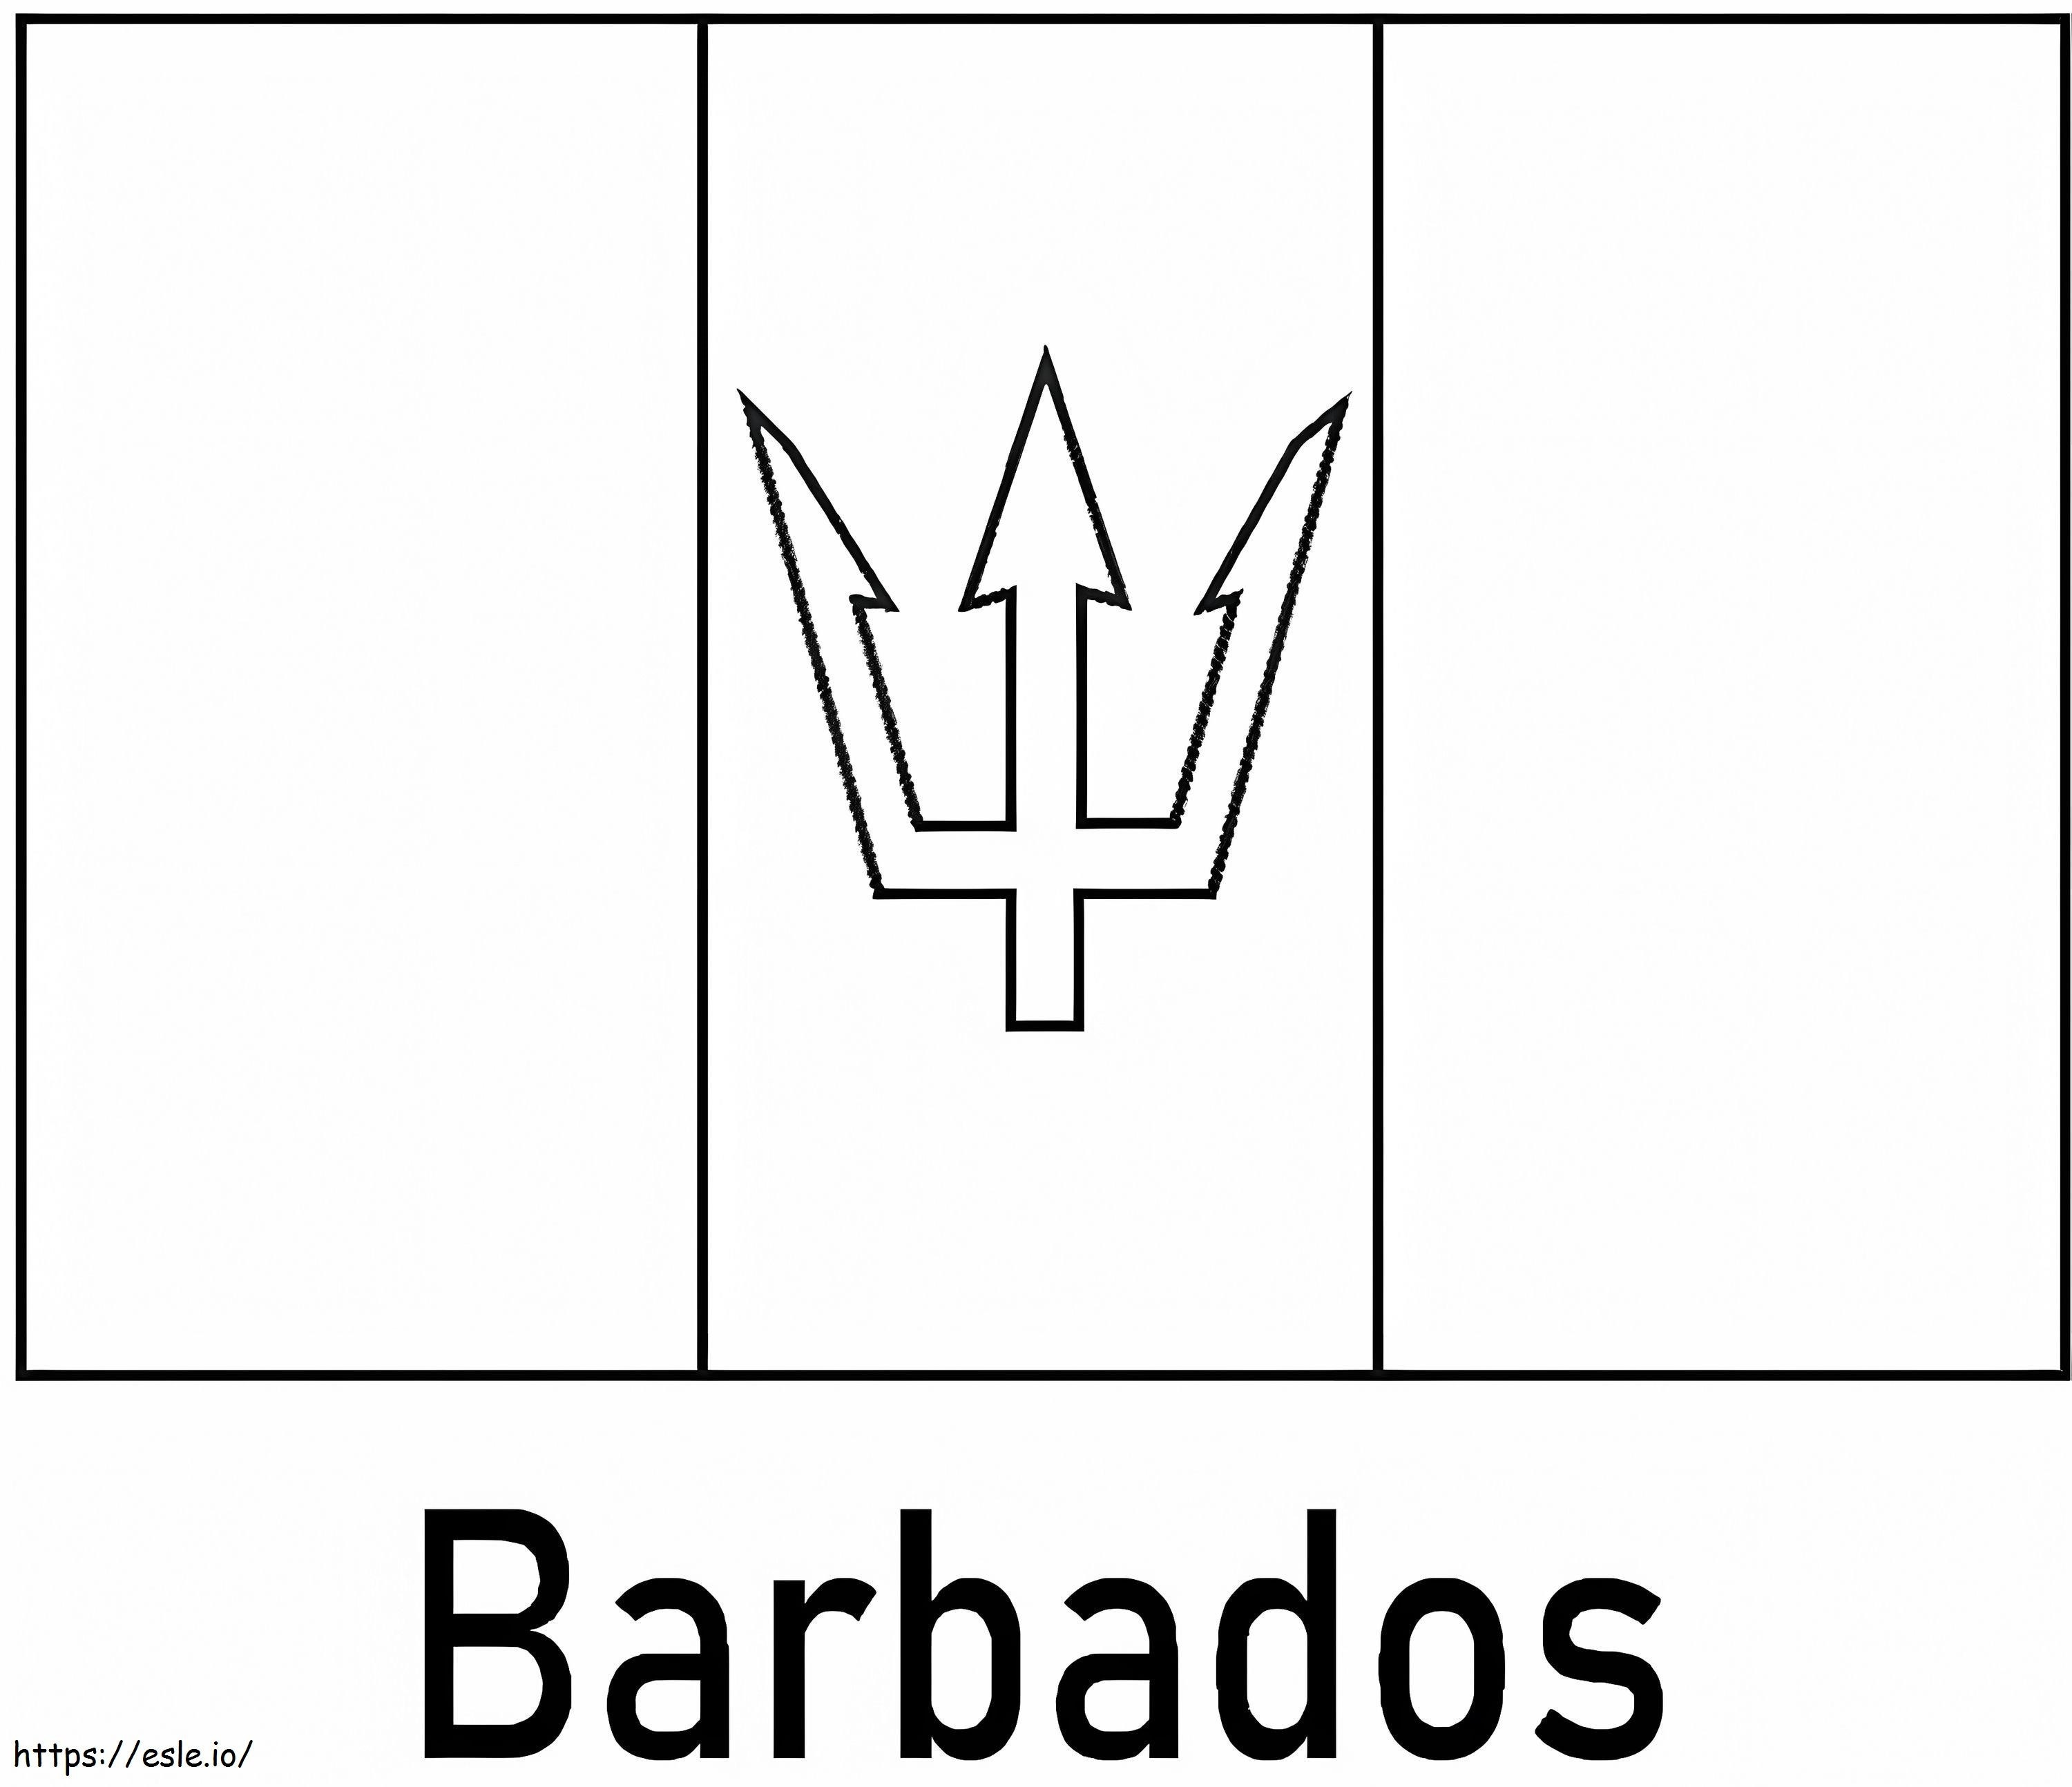 Bandiera delle Barbados da colorare